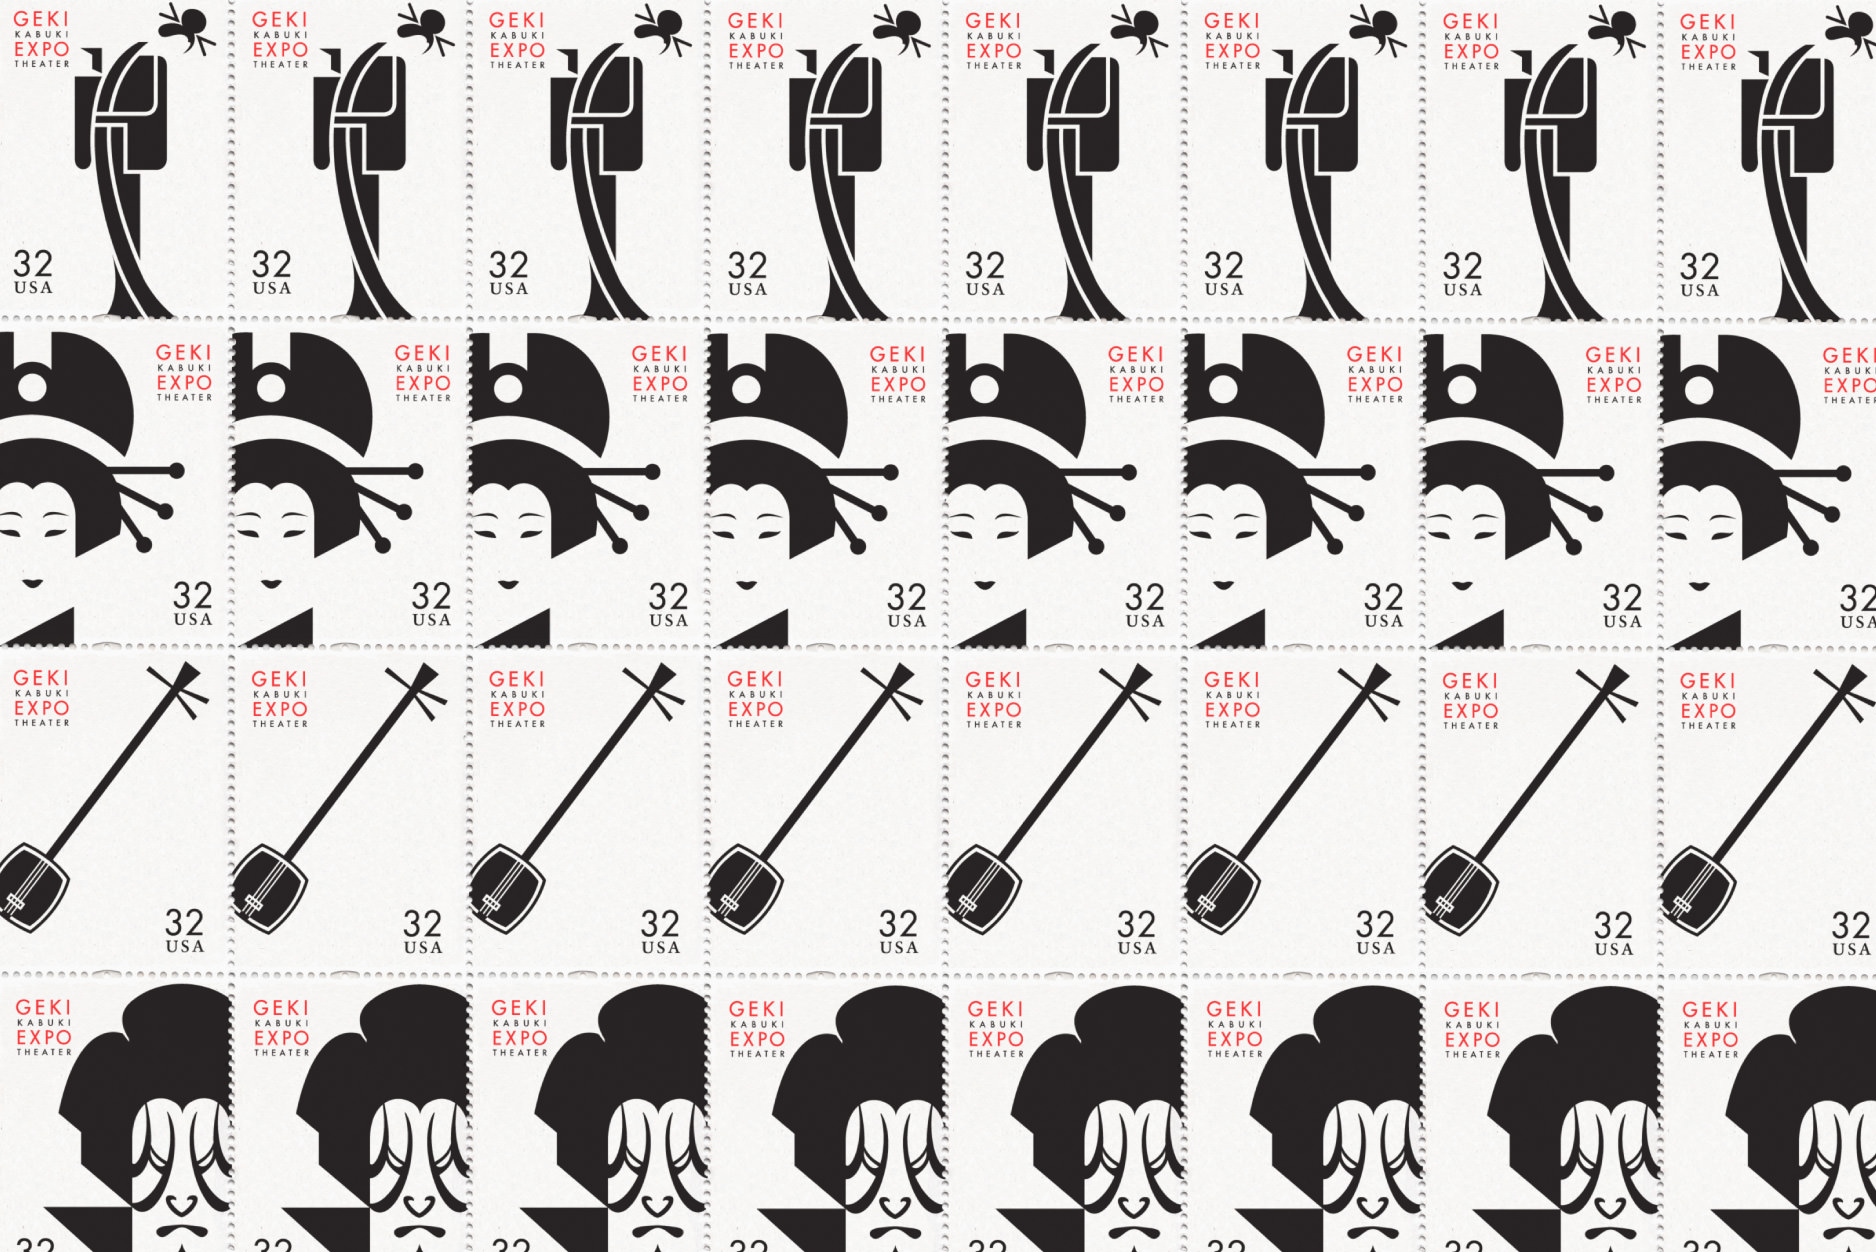 Kabuki-06-stamp-set-3800